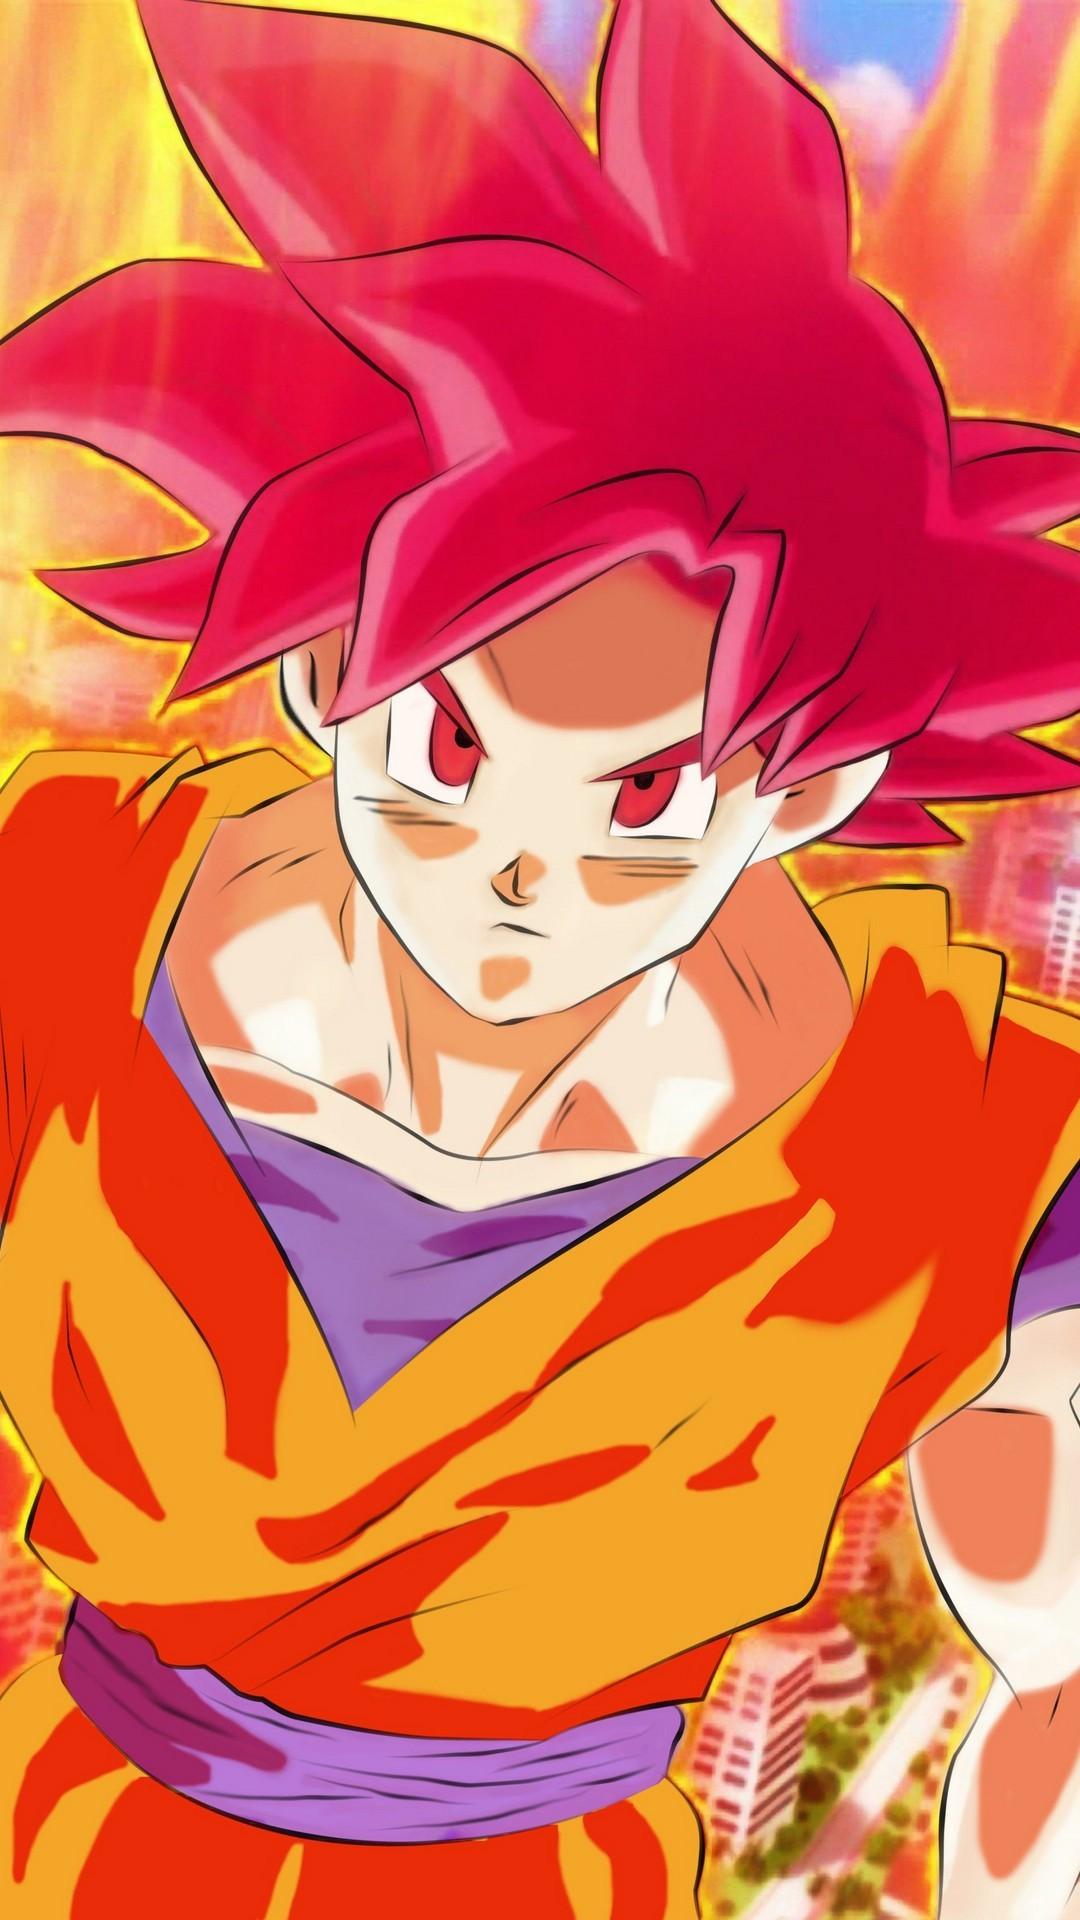 Wallpaper Goku Super Saiyan God Android Android